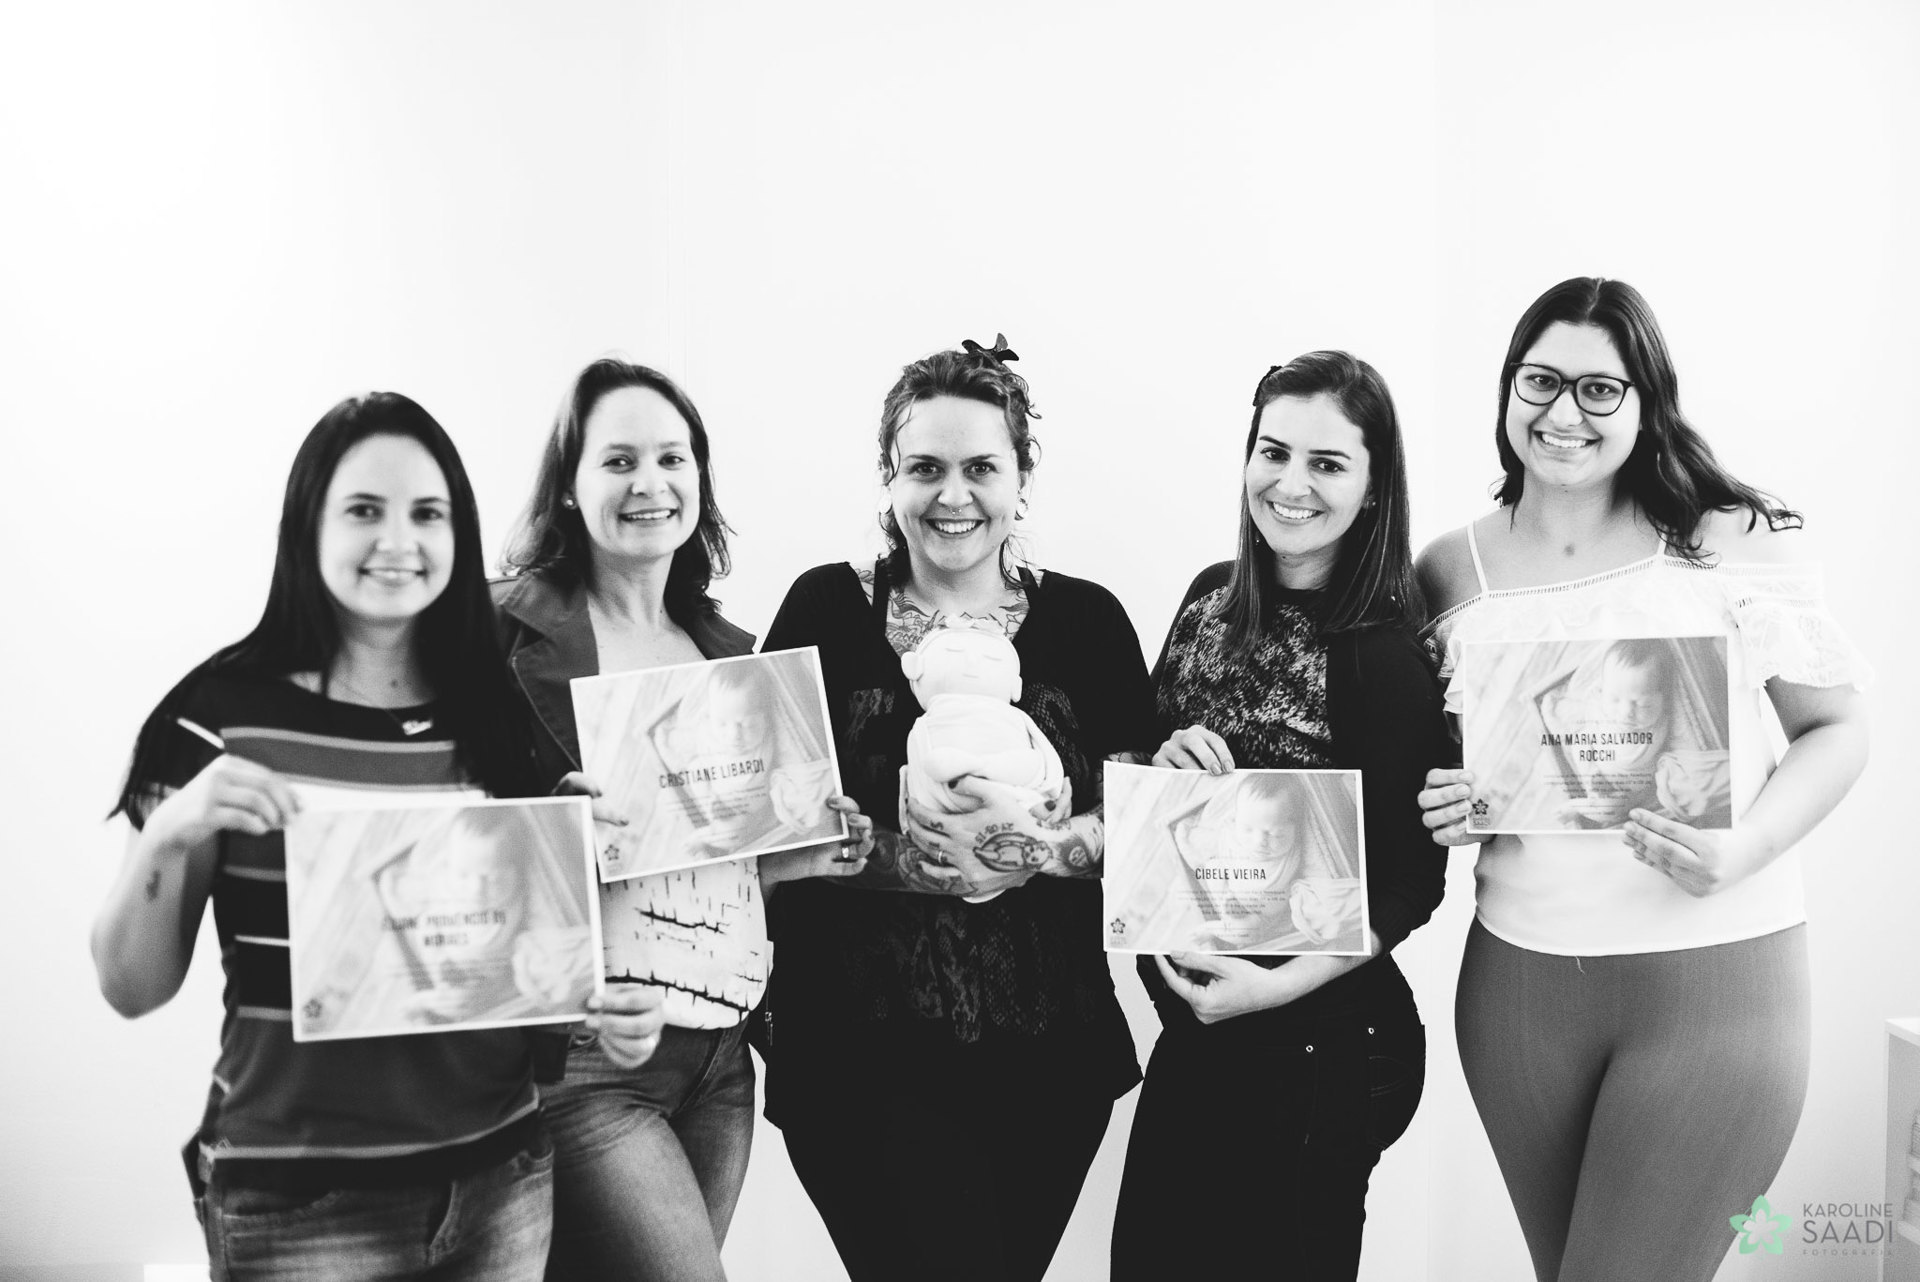 Workshop Técnicas Para Newborn - Agosto de 2019  - Vem sentir como foi! - São José do Rio Preto - SP